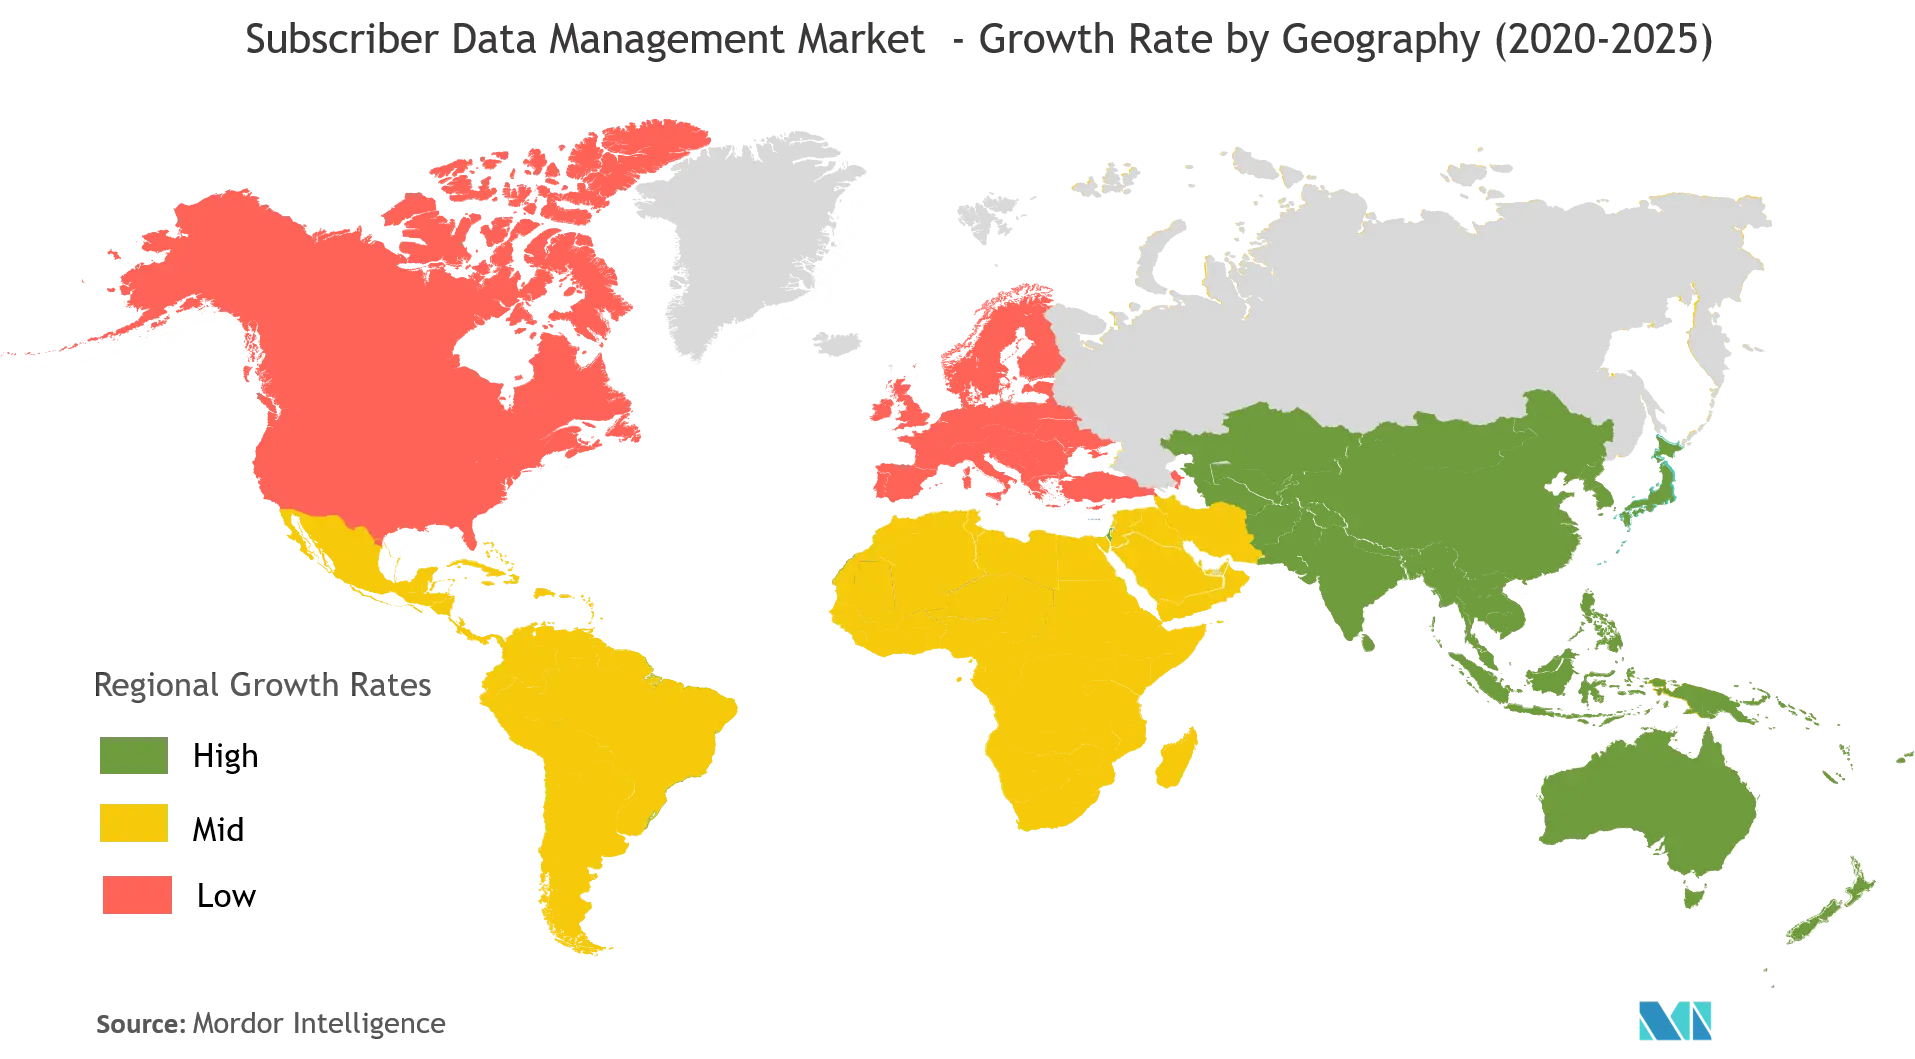 سوق إدارة بيانات المشتركين معدل النمو حسب الجغرافيا (2020-2025)